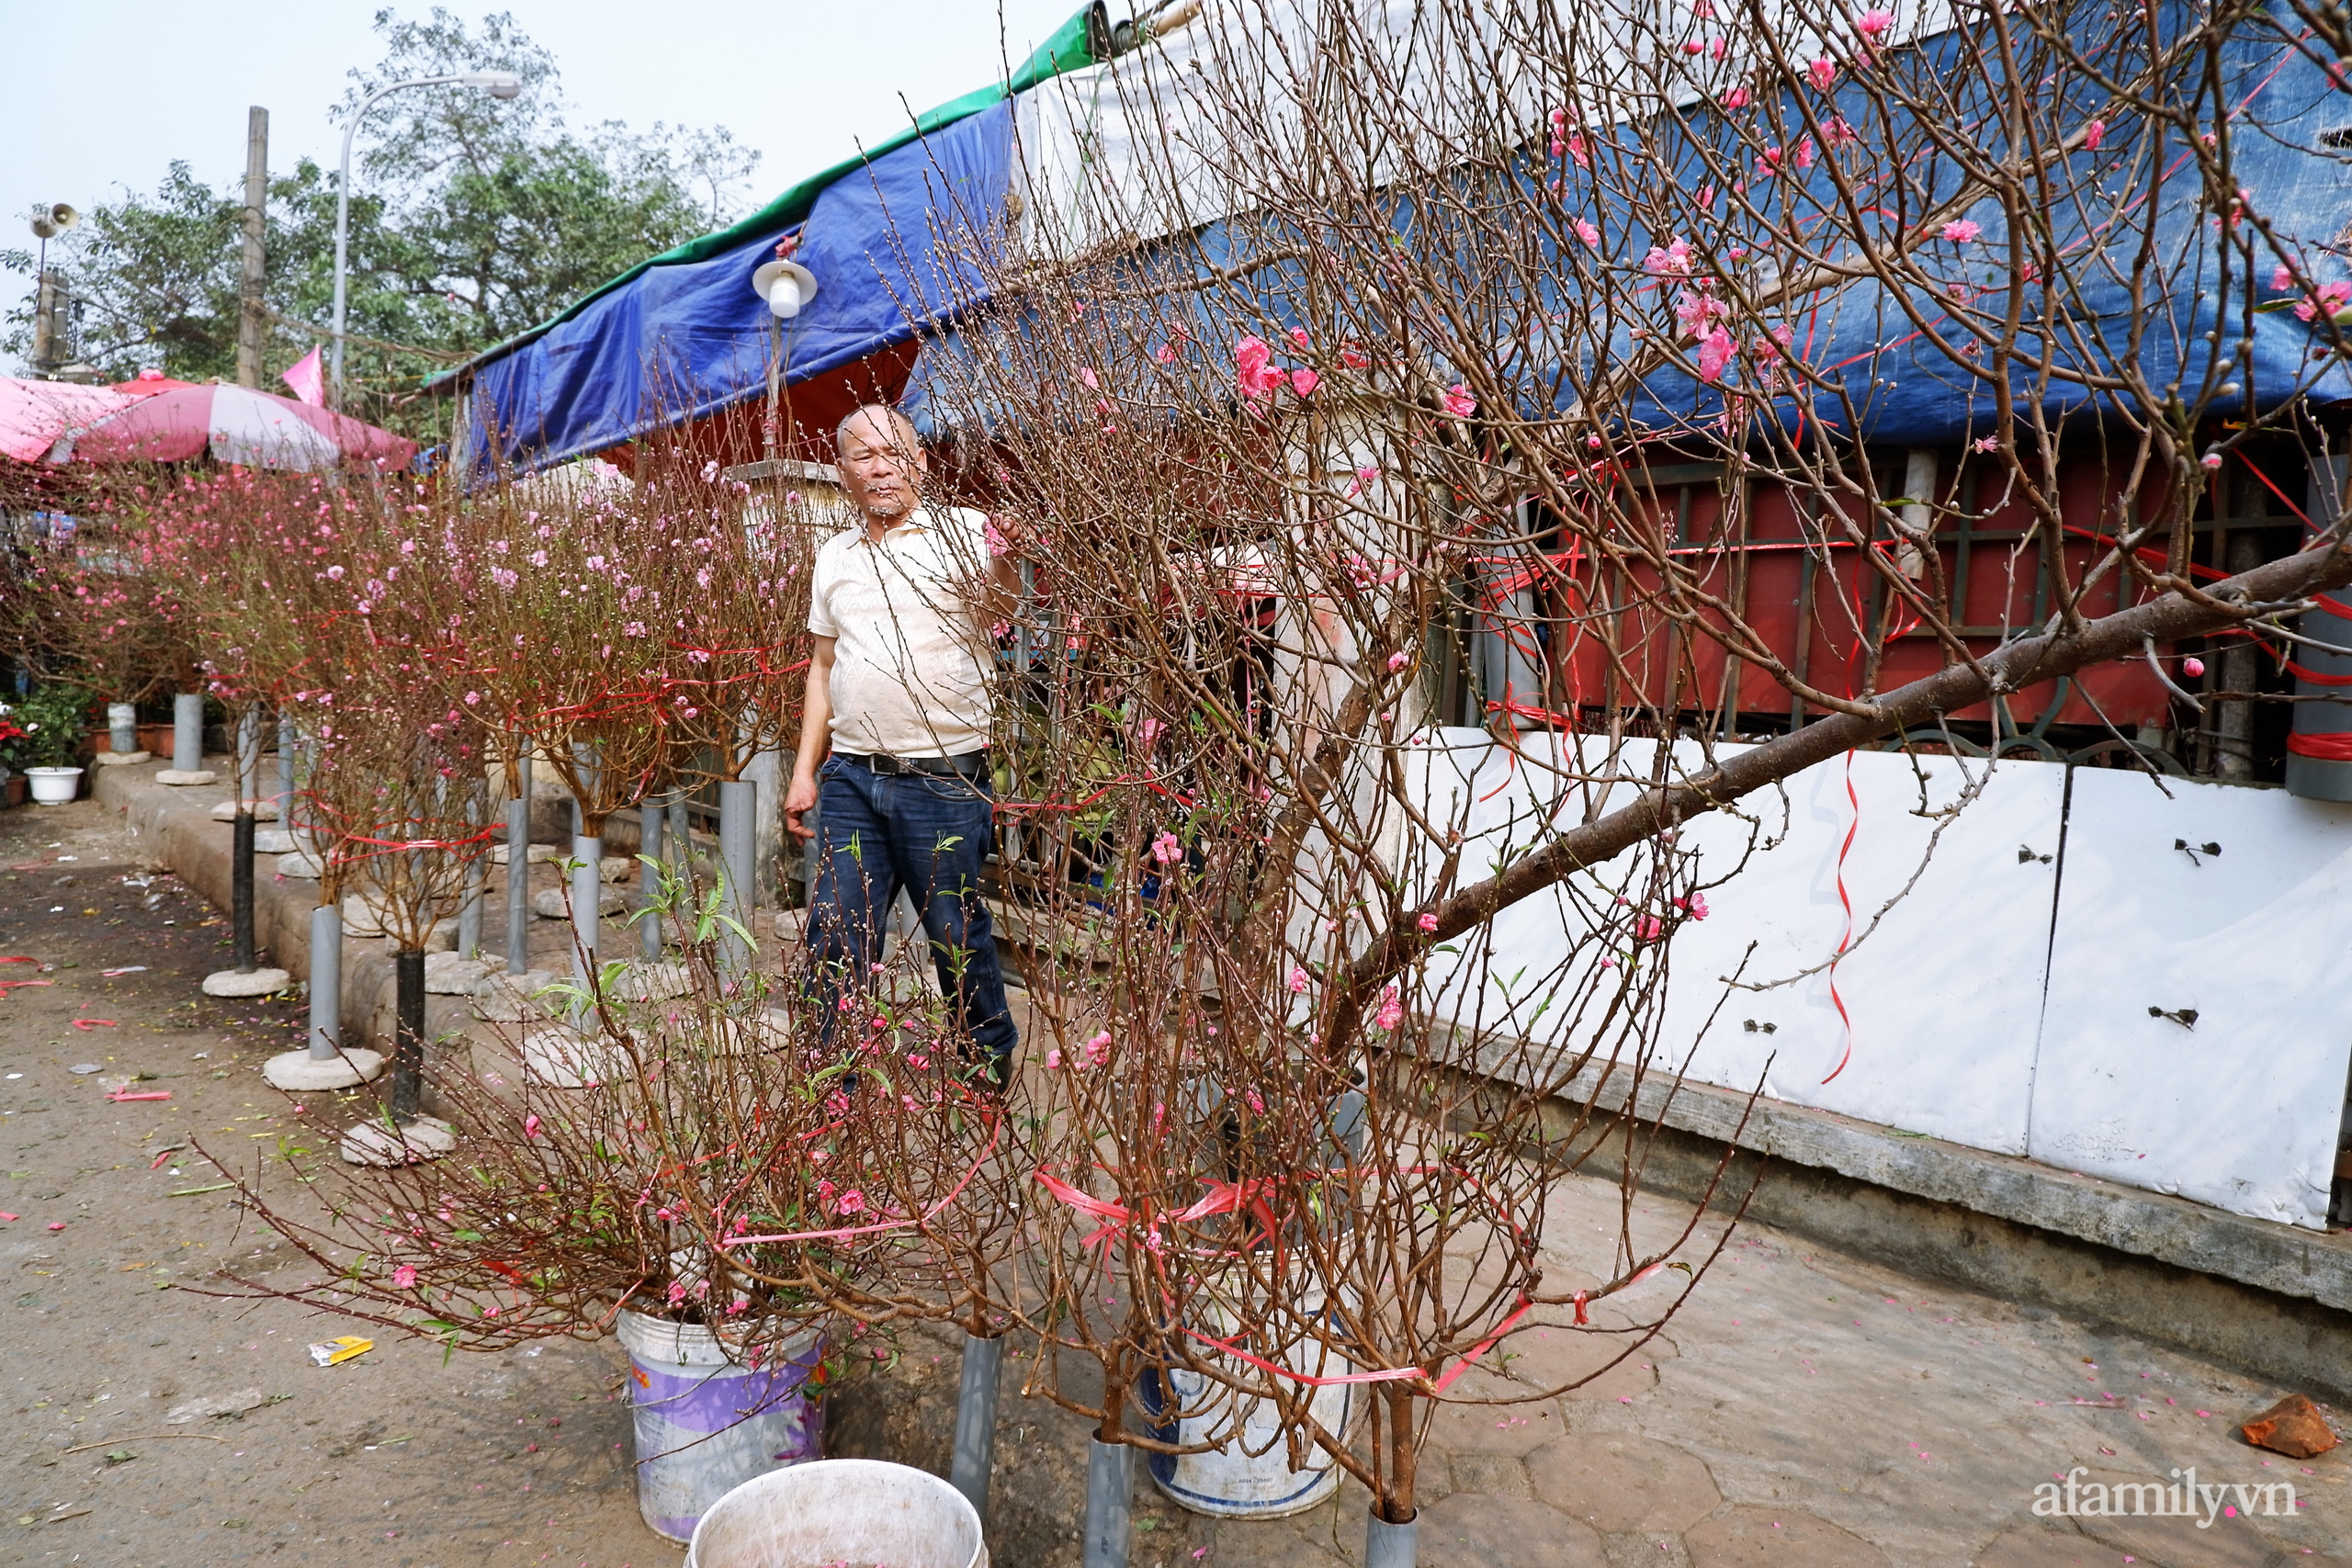 Chợ hoa lớn nhất Hà Nội nhộn nhịp, giá hoa tăng nhẹ trước thềm Tết Nguyên đán 2021  - Ảnh 10.